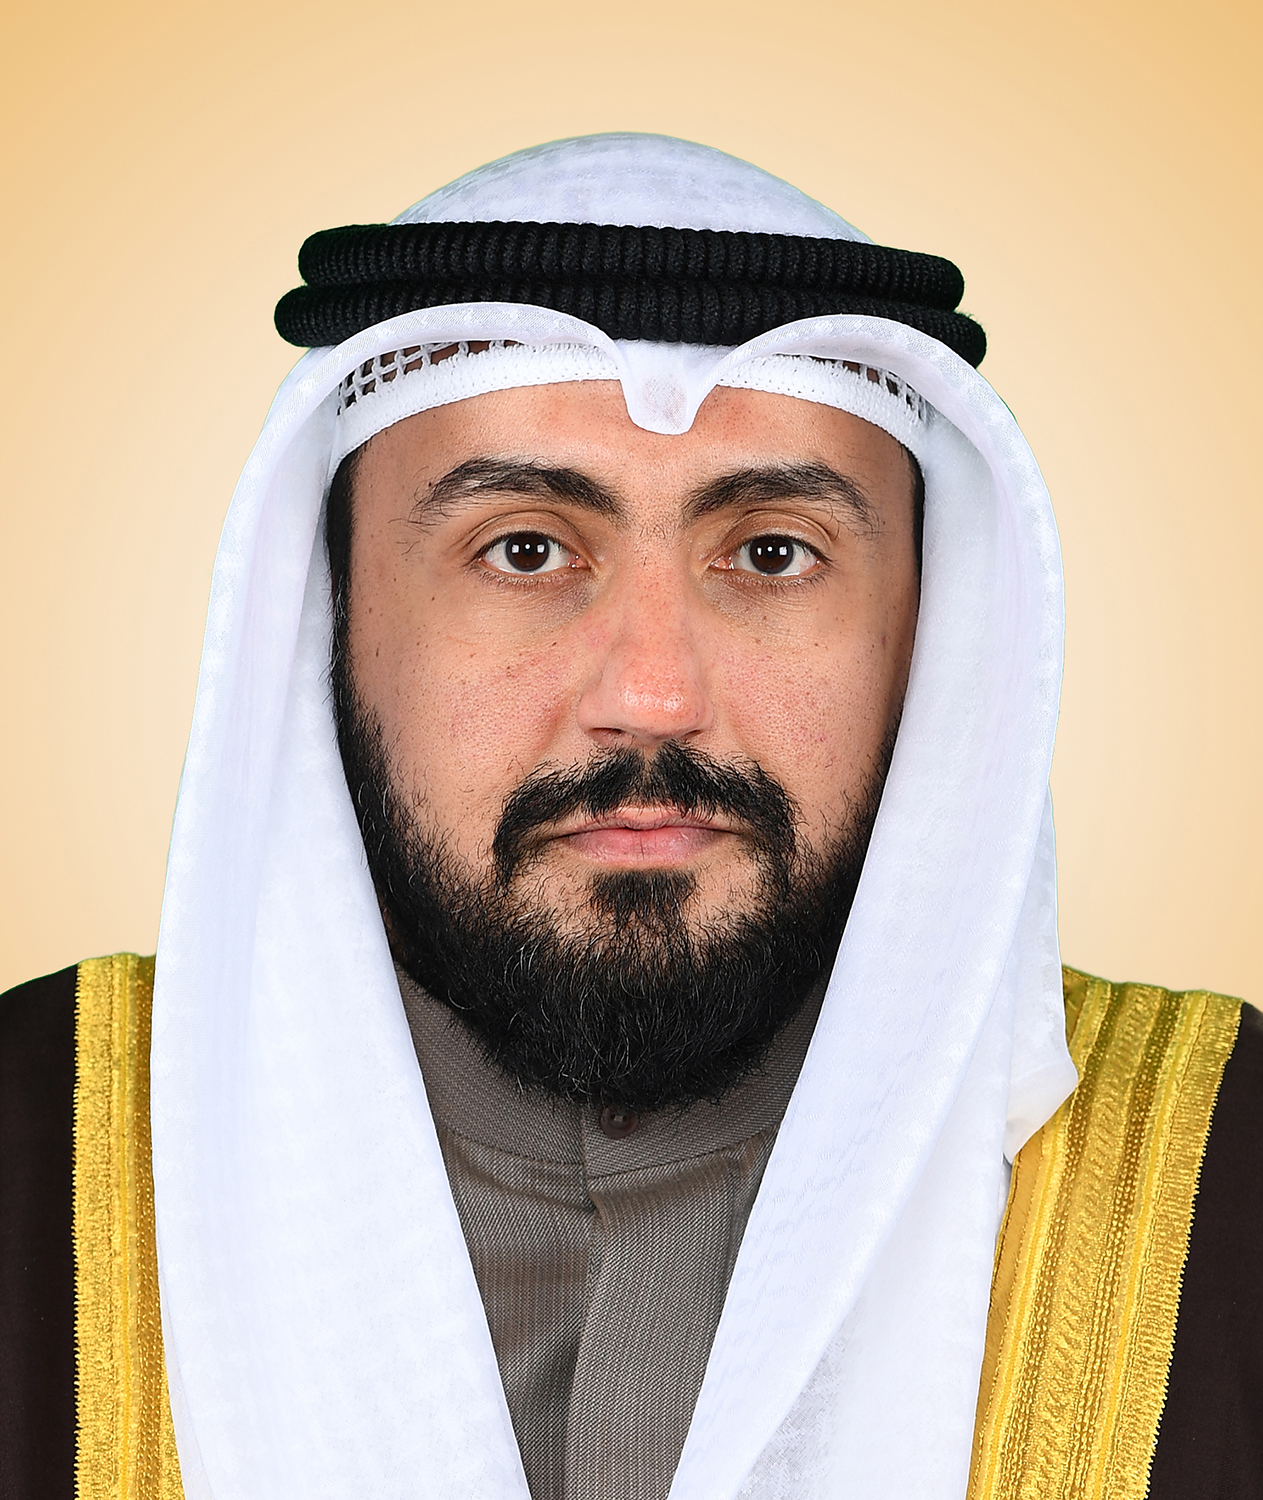 Kuwait's Health Minister Sheikh Dr.Basel Al-Sabah